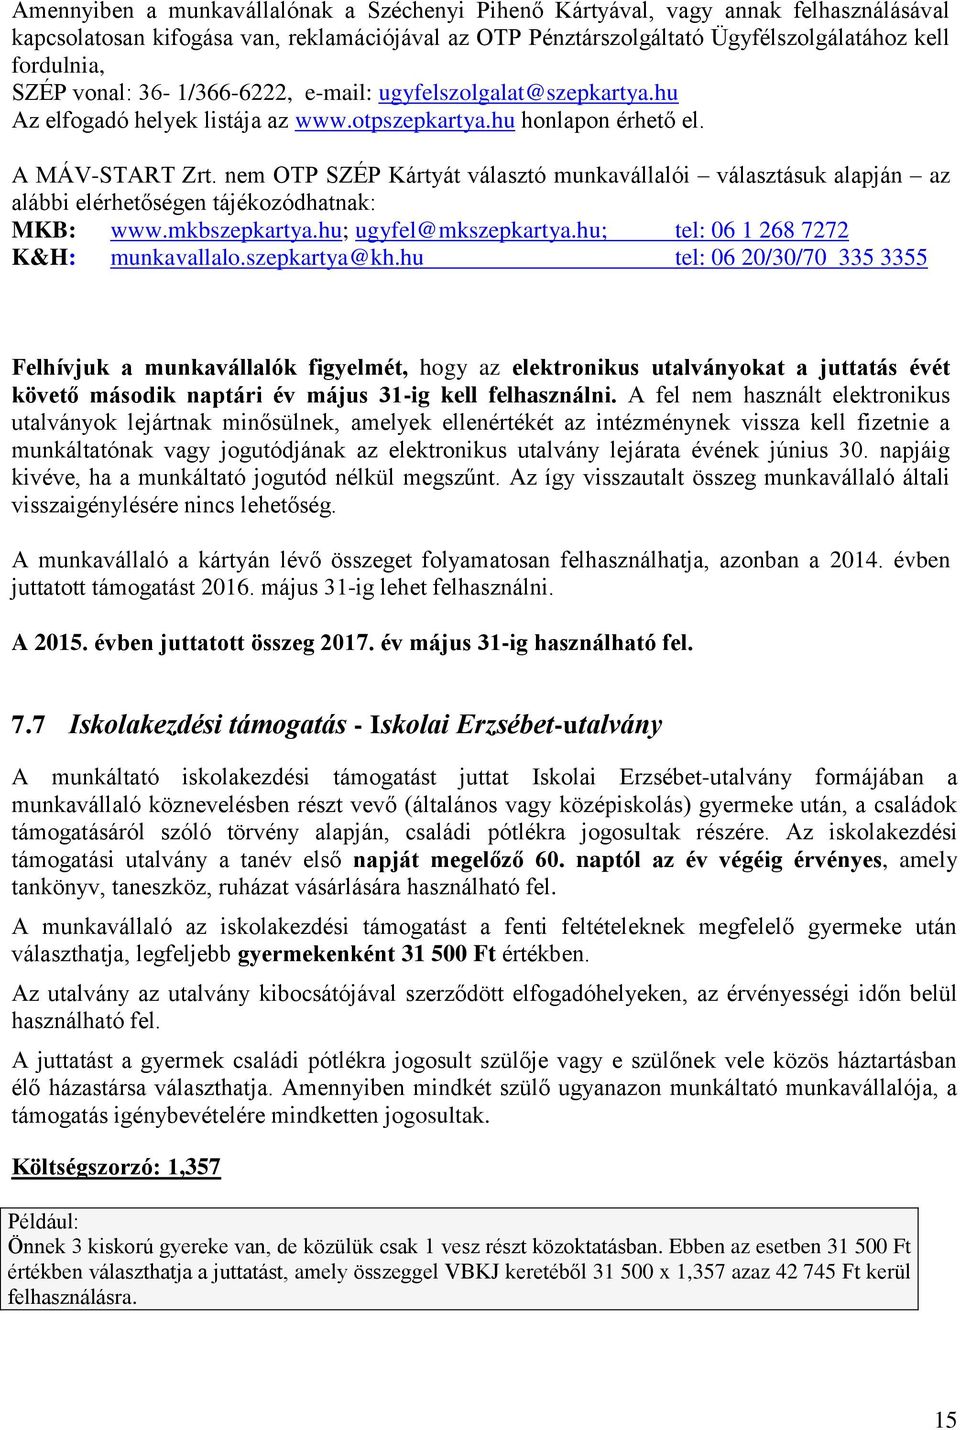 nem OTP SZÉP Kártyát választó munkavállalói választásuk alapján az alábbi elérhetőségen tájékozódhatnak: MKB: www.mkbszepkartya.hu; ugyfel@mkszepkartya.hu; tel: 06 1 268 7272 K&H: munkavallalo.